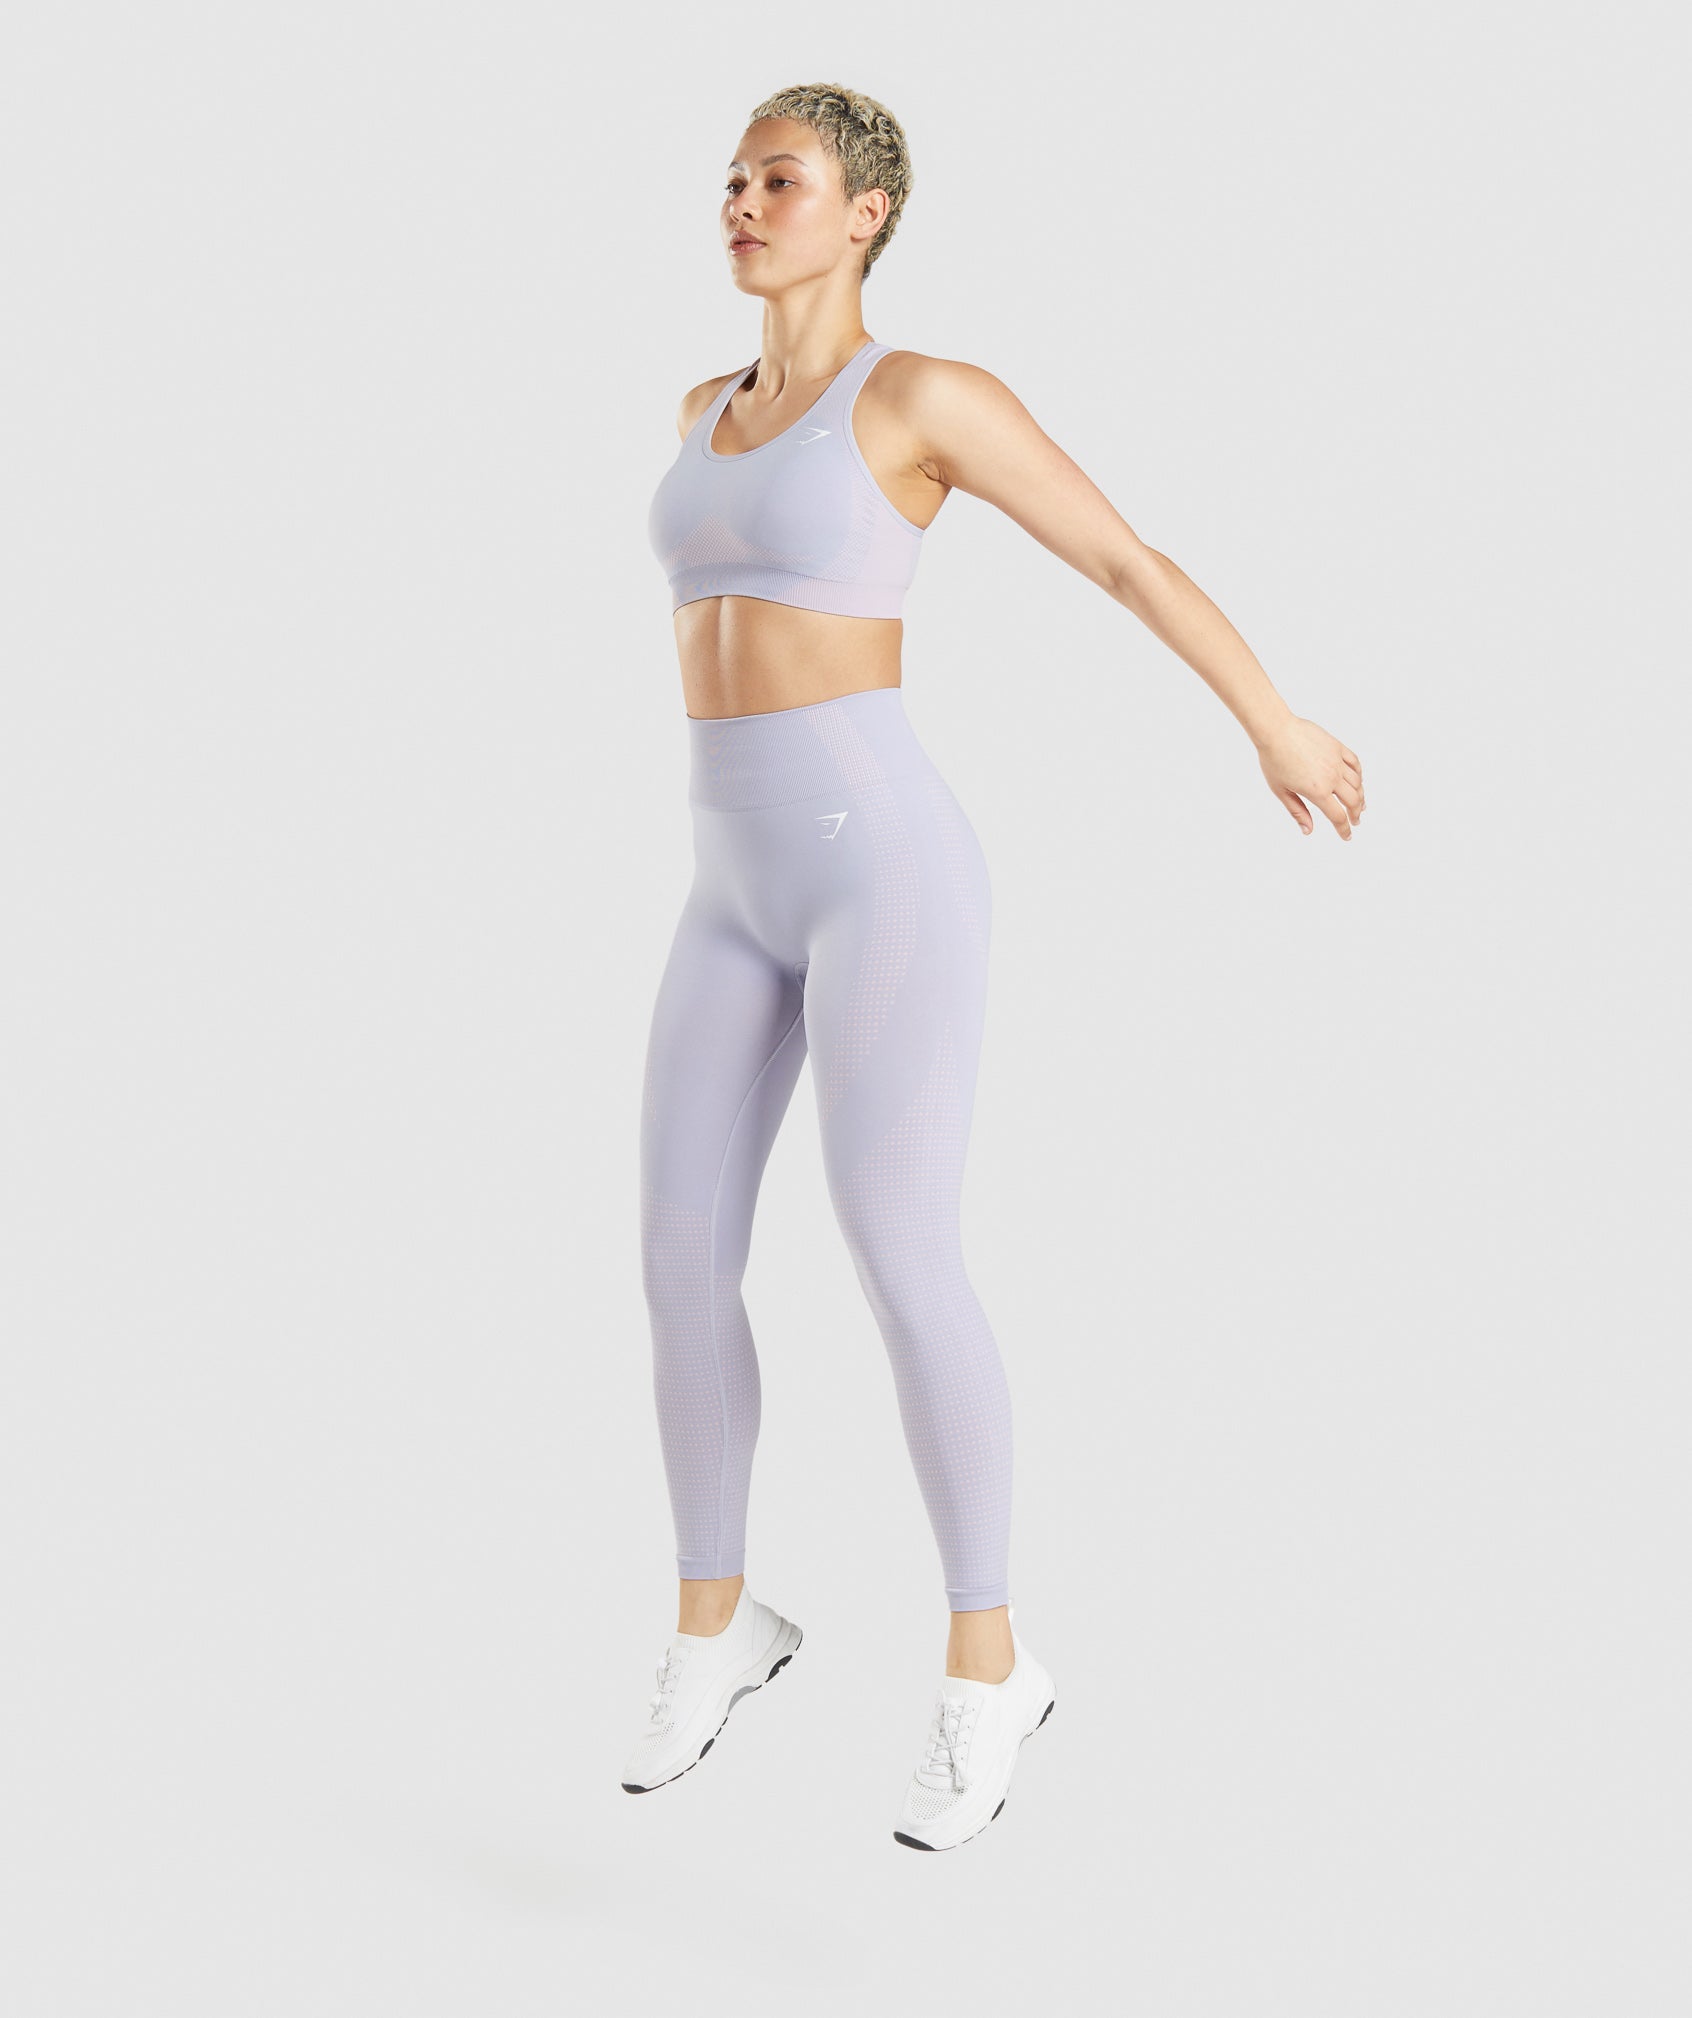 Gymshark vital seamless ombré leggings - $25 - From Paula